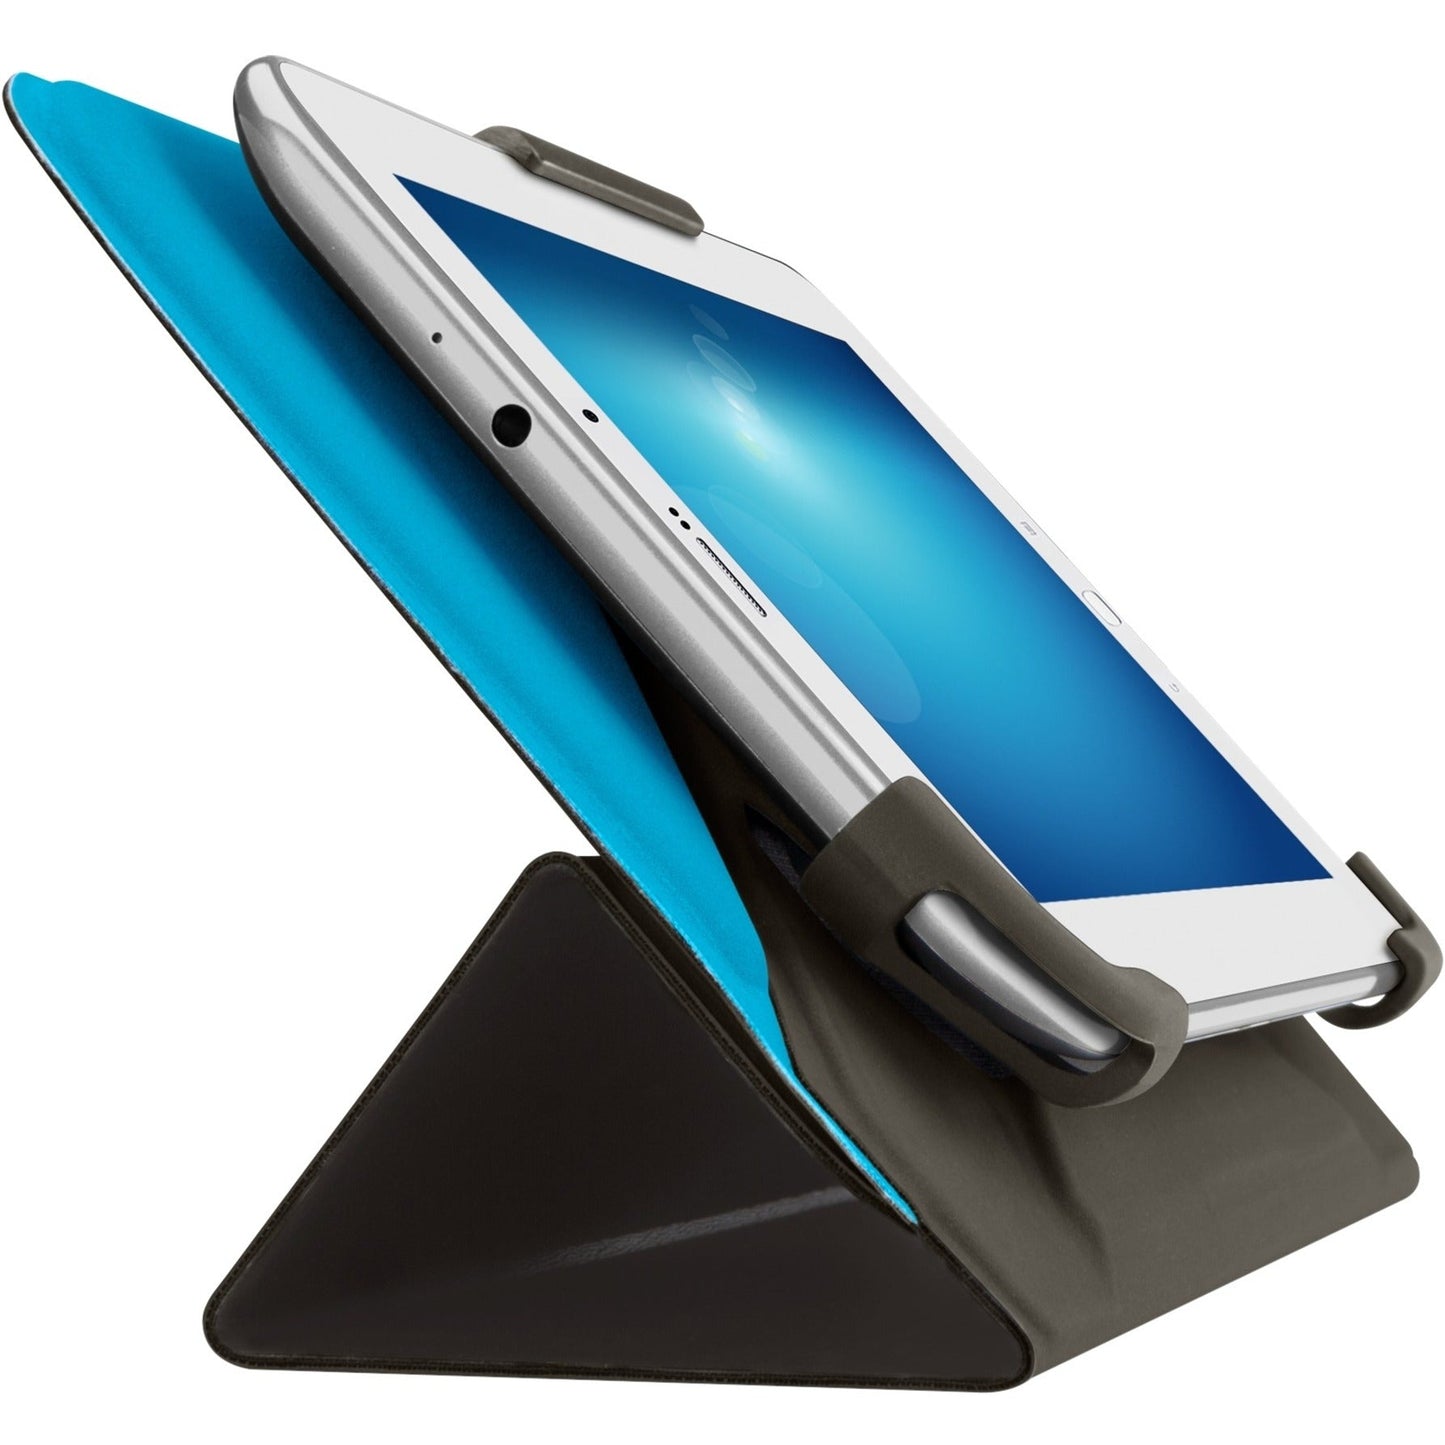 Belkin Carrying Case (Folio) for 7" to 8" iPad mini iPad mini 2 - Charcoal